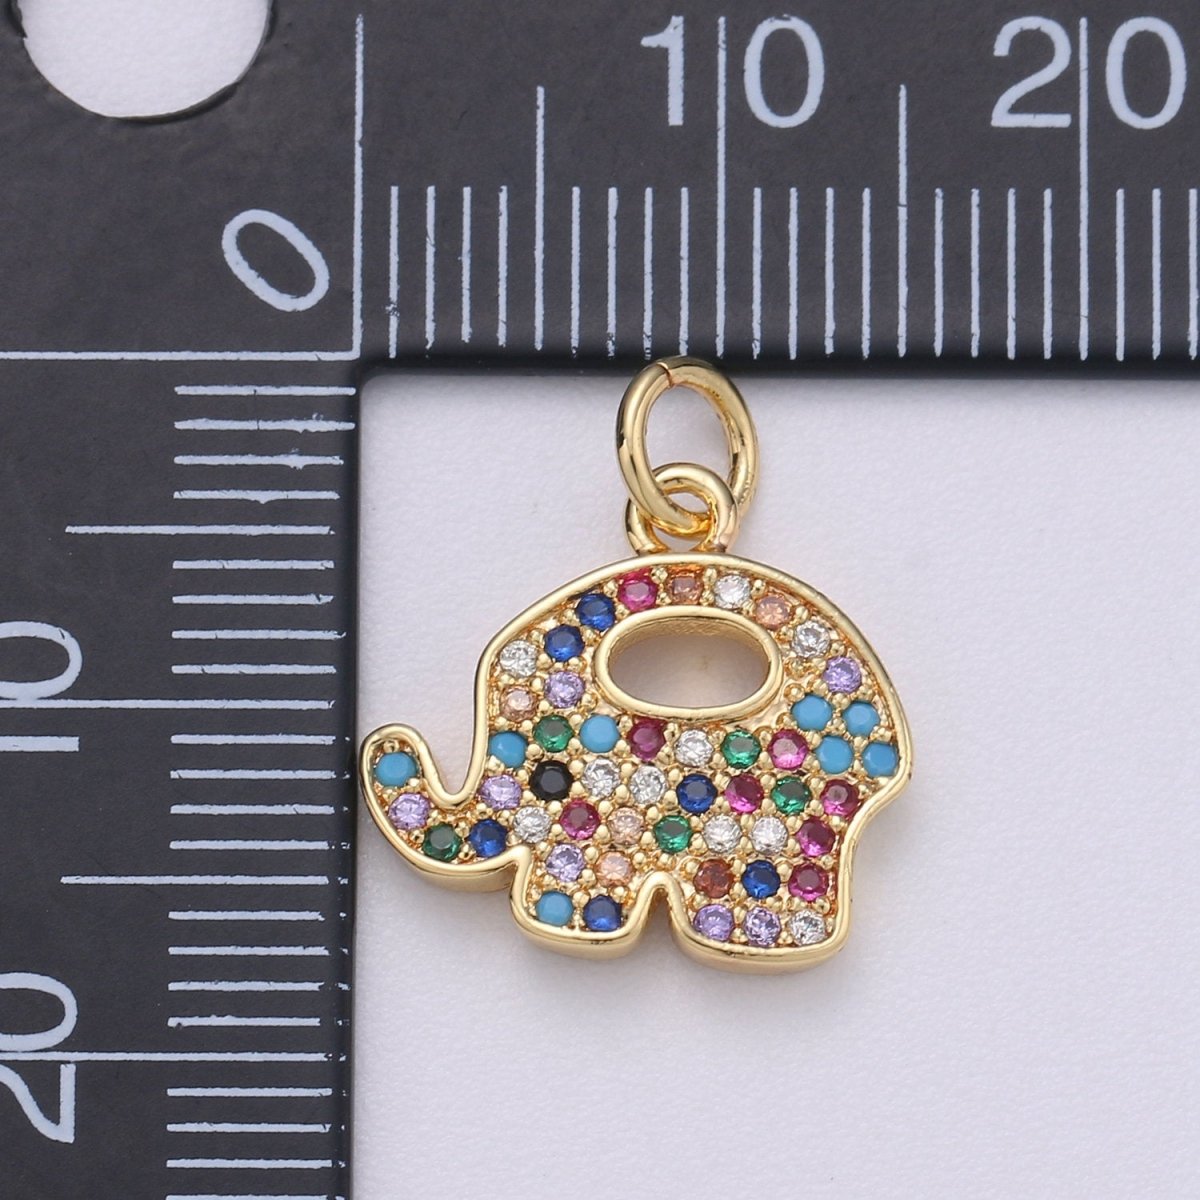 14k Gold Filled Elephant Charm Good Luck Charms, Micro Pave Deity Charm, CZ Gold Colorful Charm, Wisdom Charm Dainty Jewelry SupplyC-575 - DLUXCA